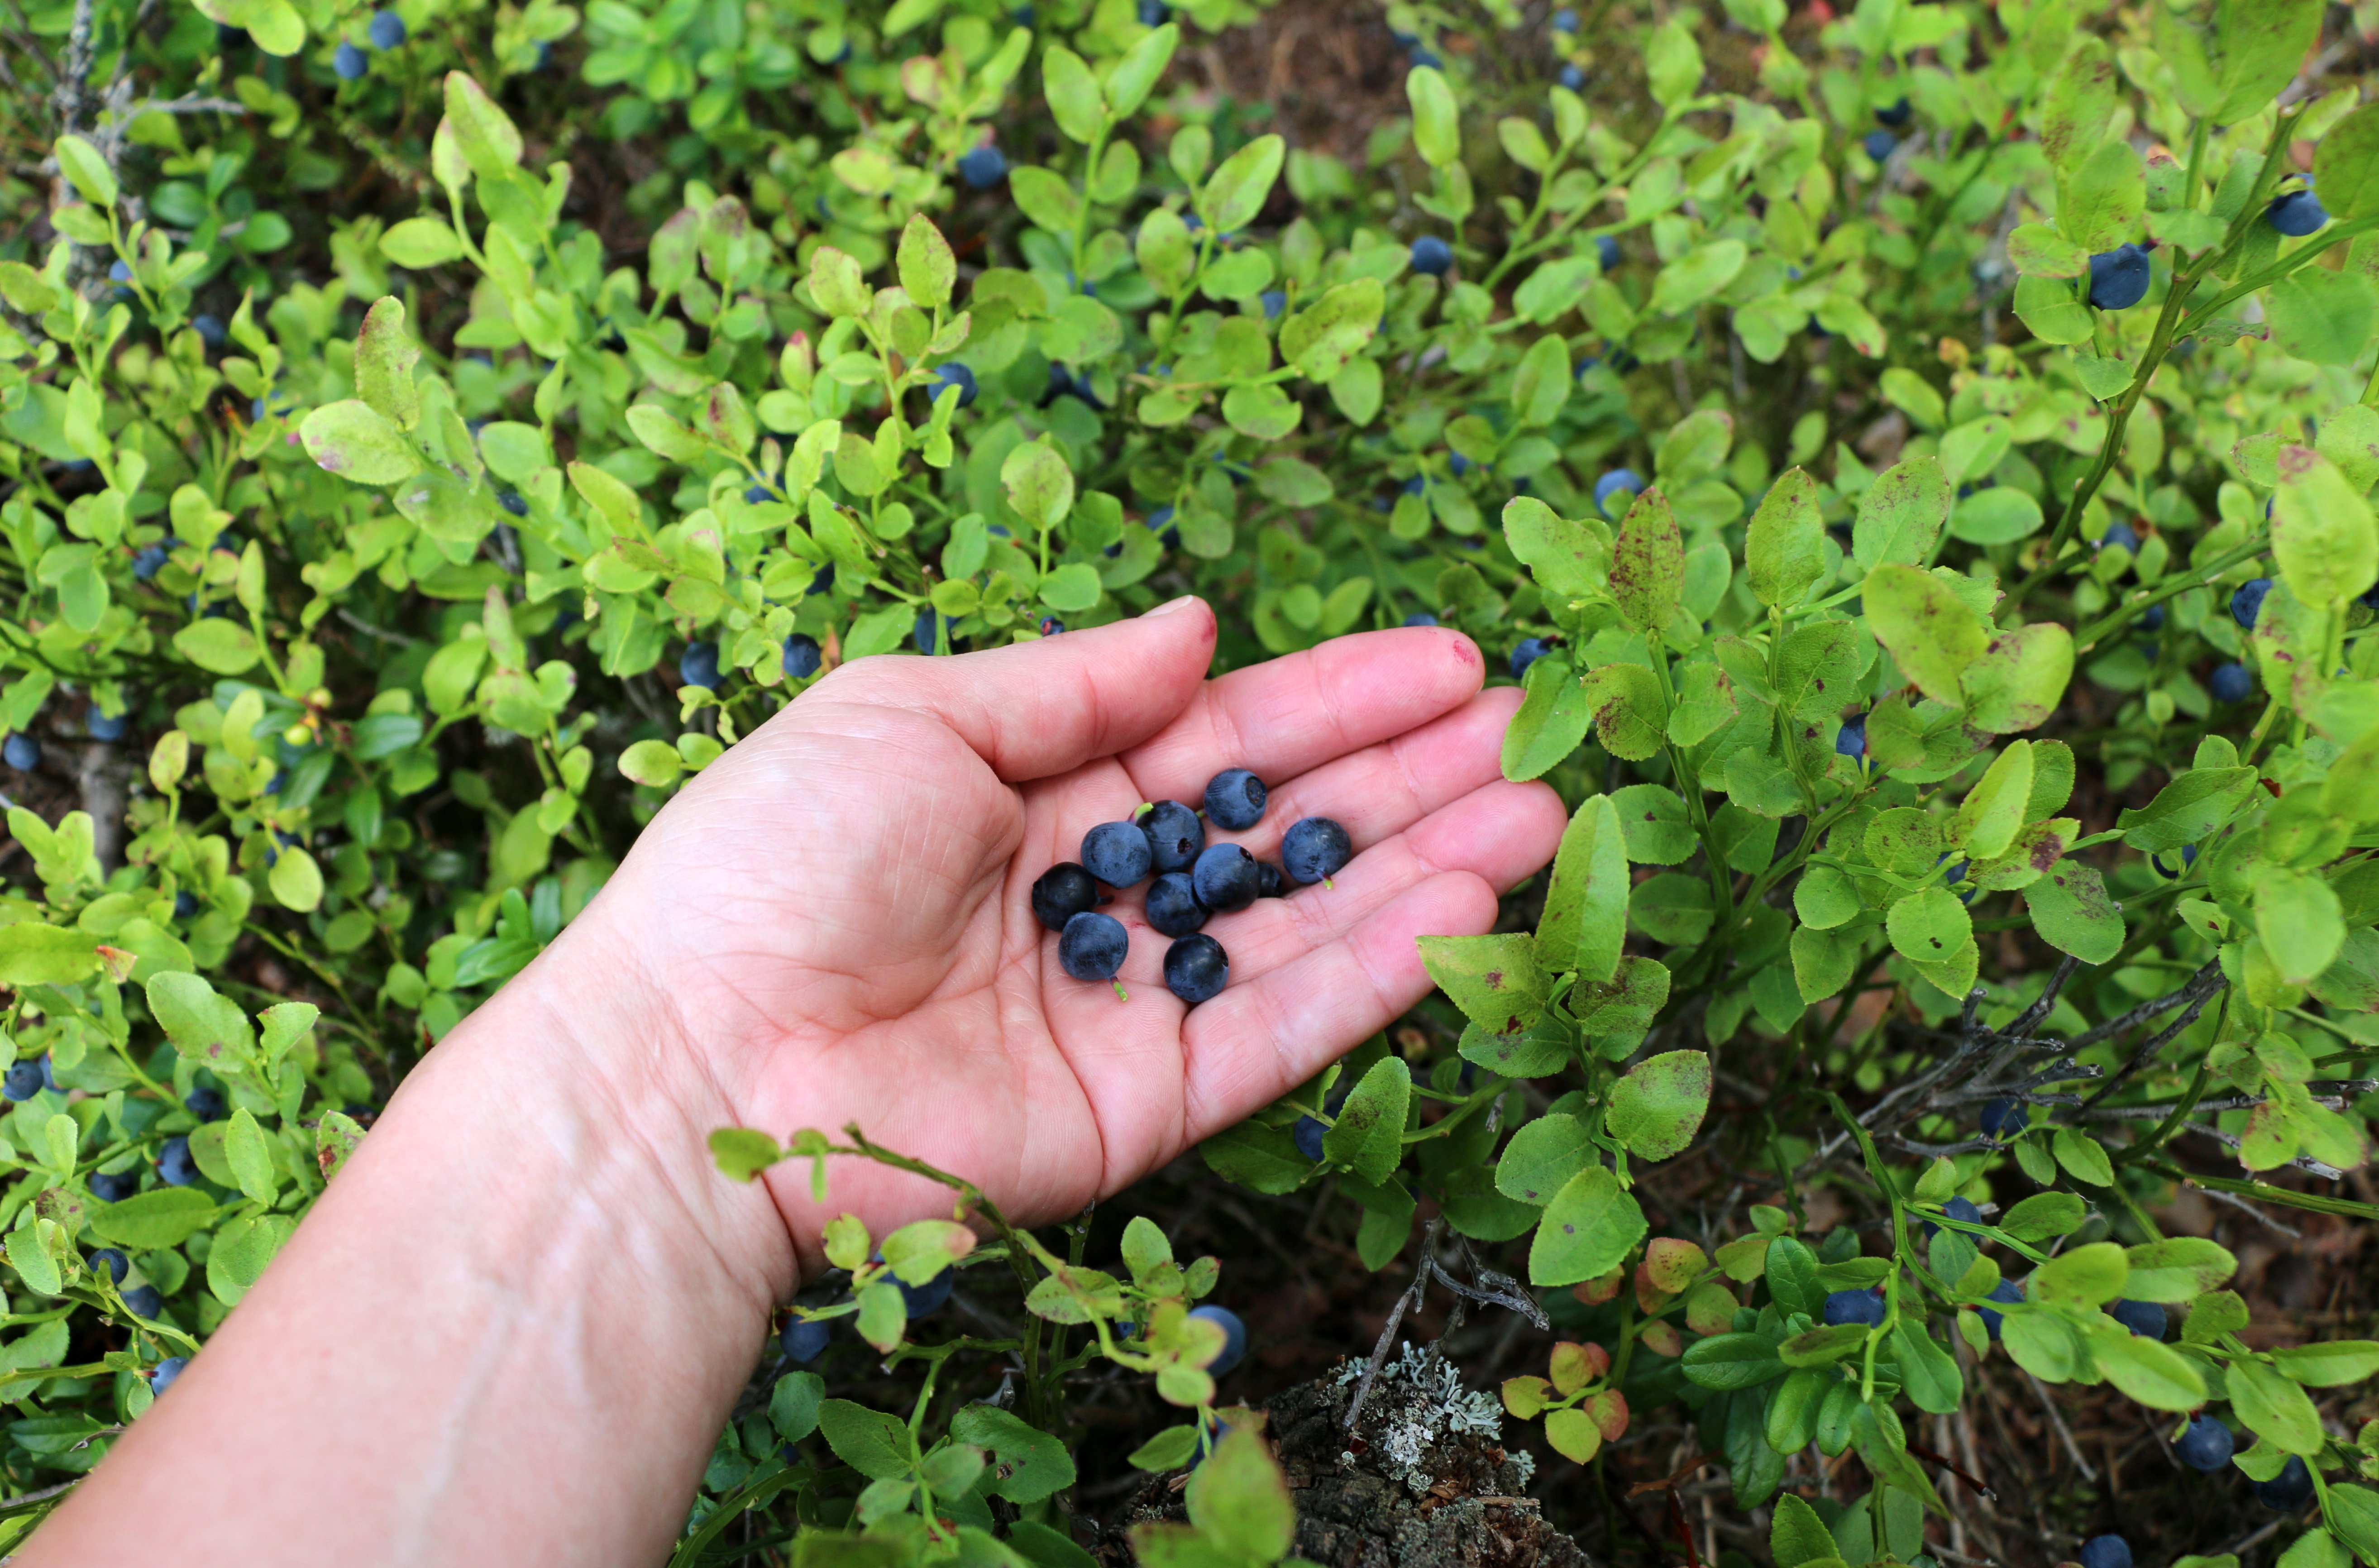 Kupad hand med blåbär, runtomkring växer blåbär.